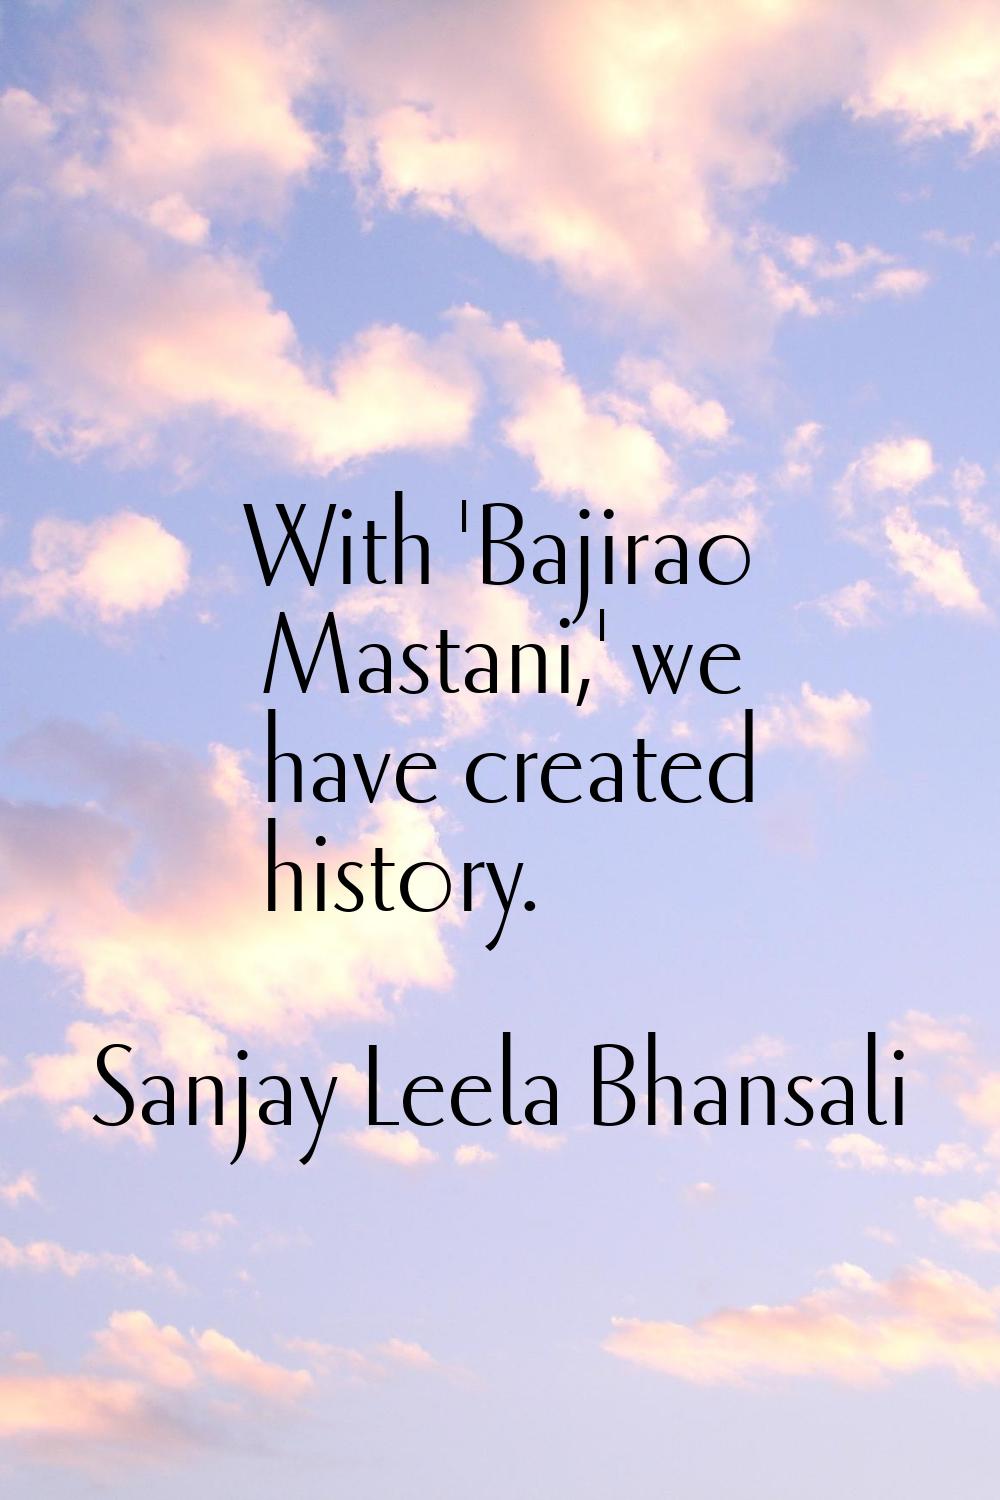 With 'Bajirao Mastani,' we have created history.